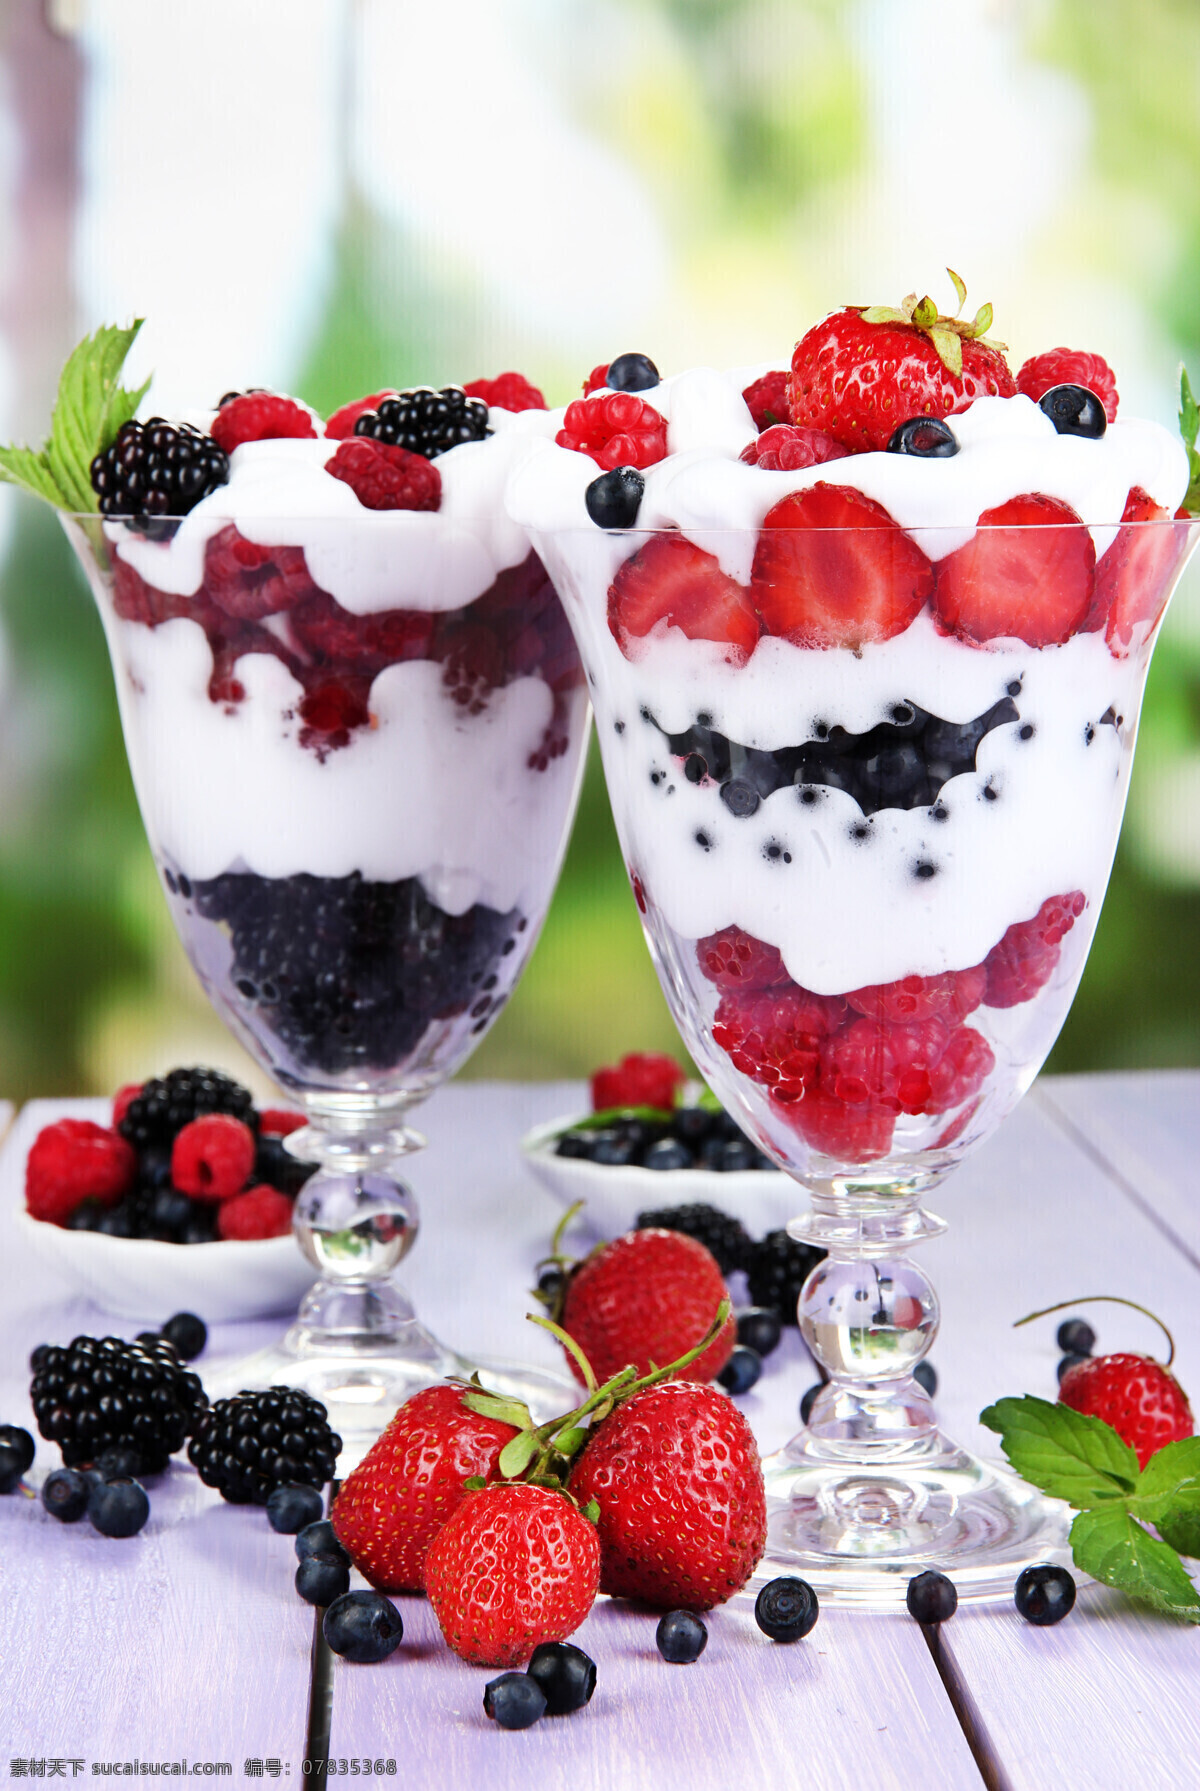 水果 冰激凌 草莓 蓝莓 树莓 美食图片 餐饮美食